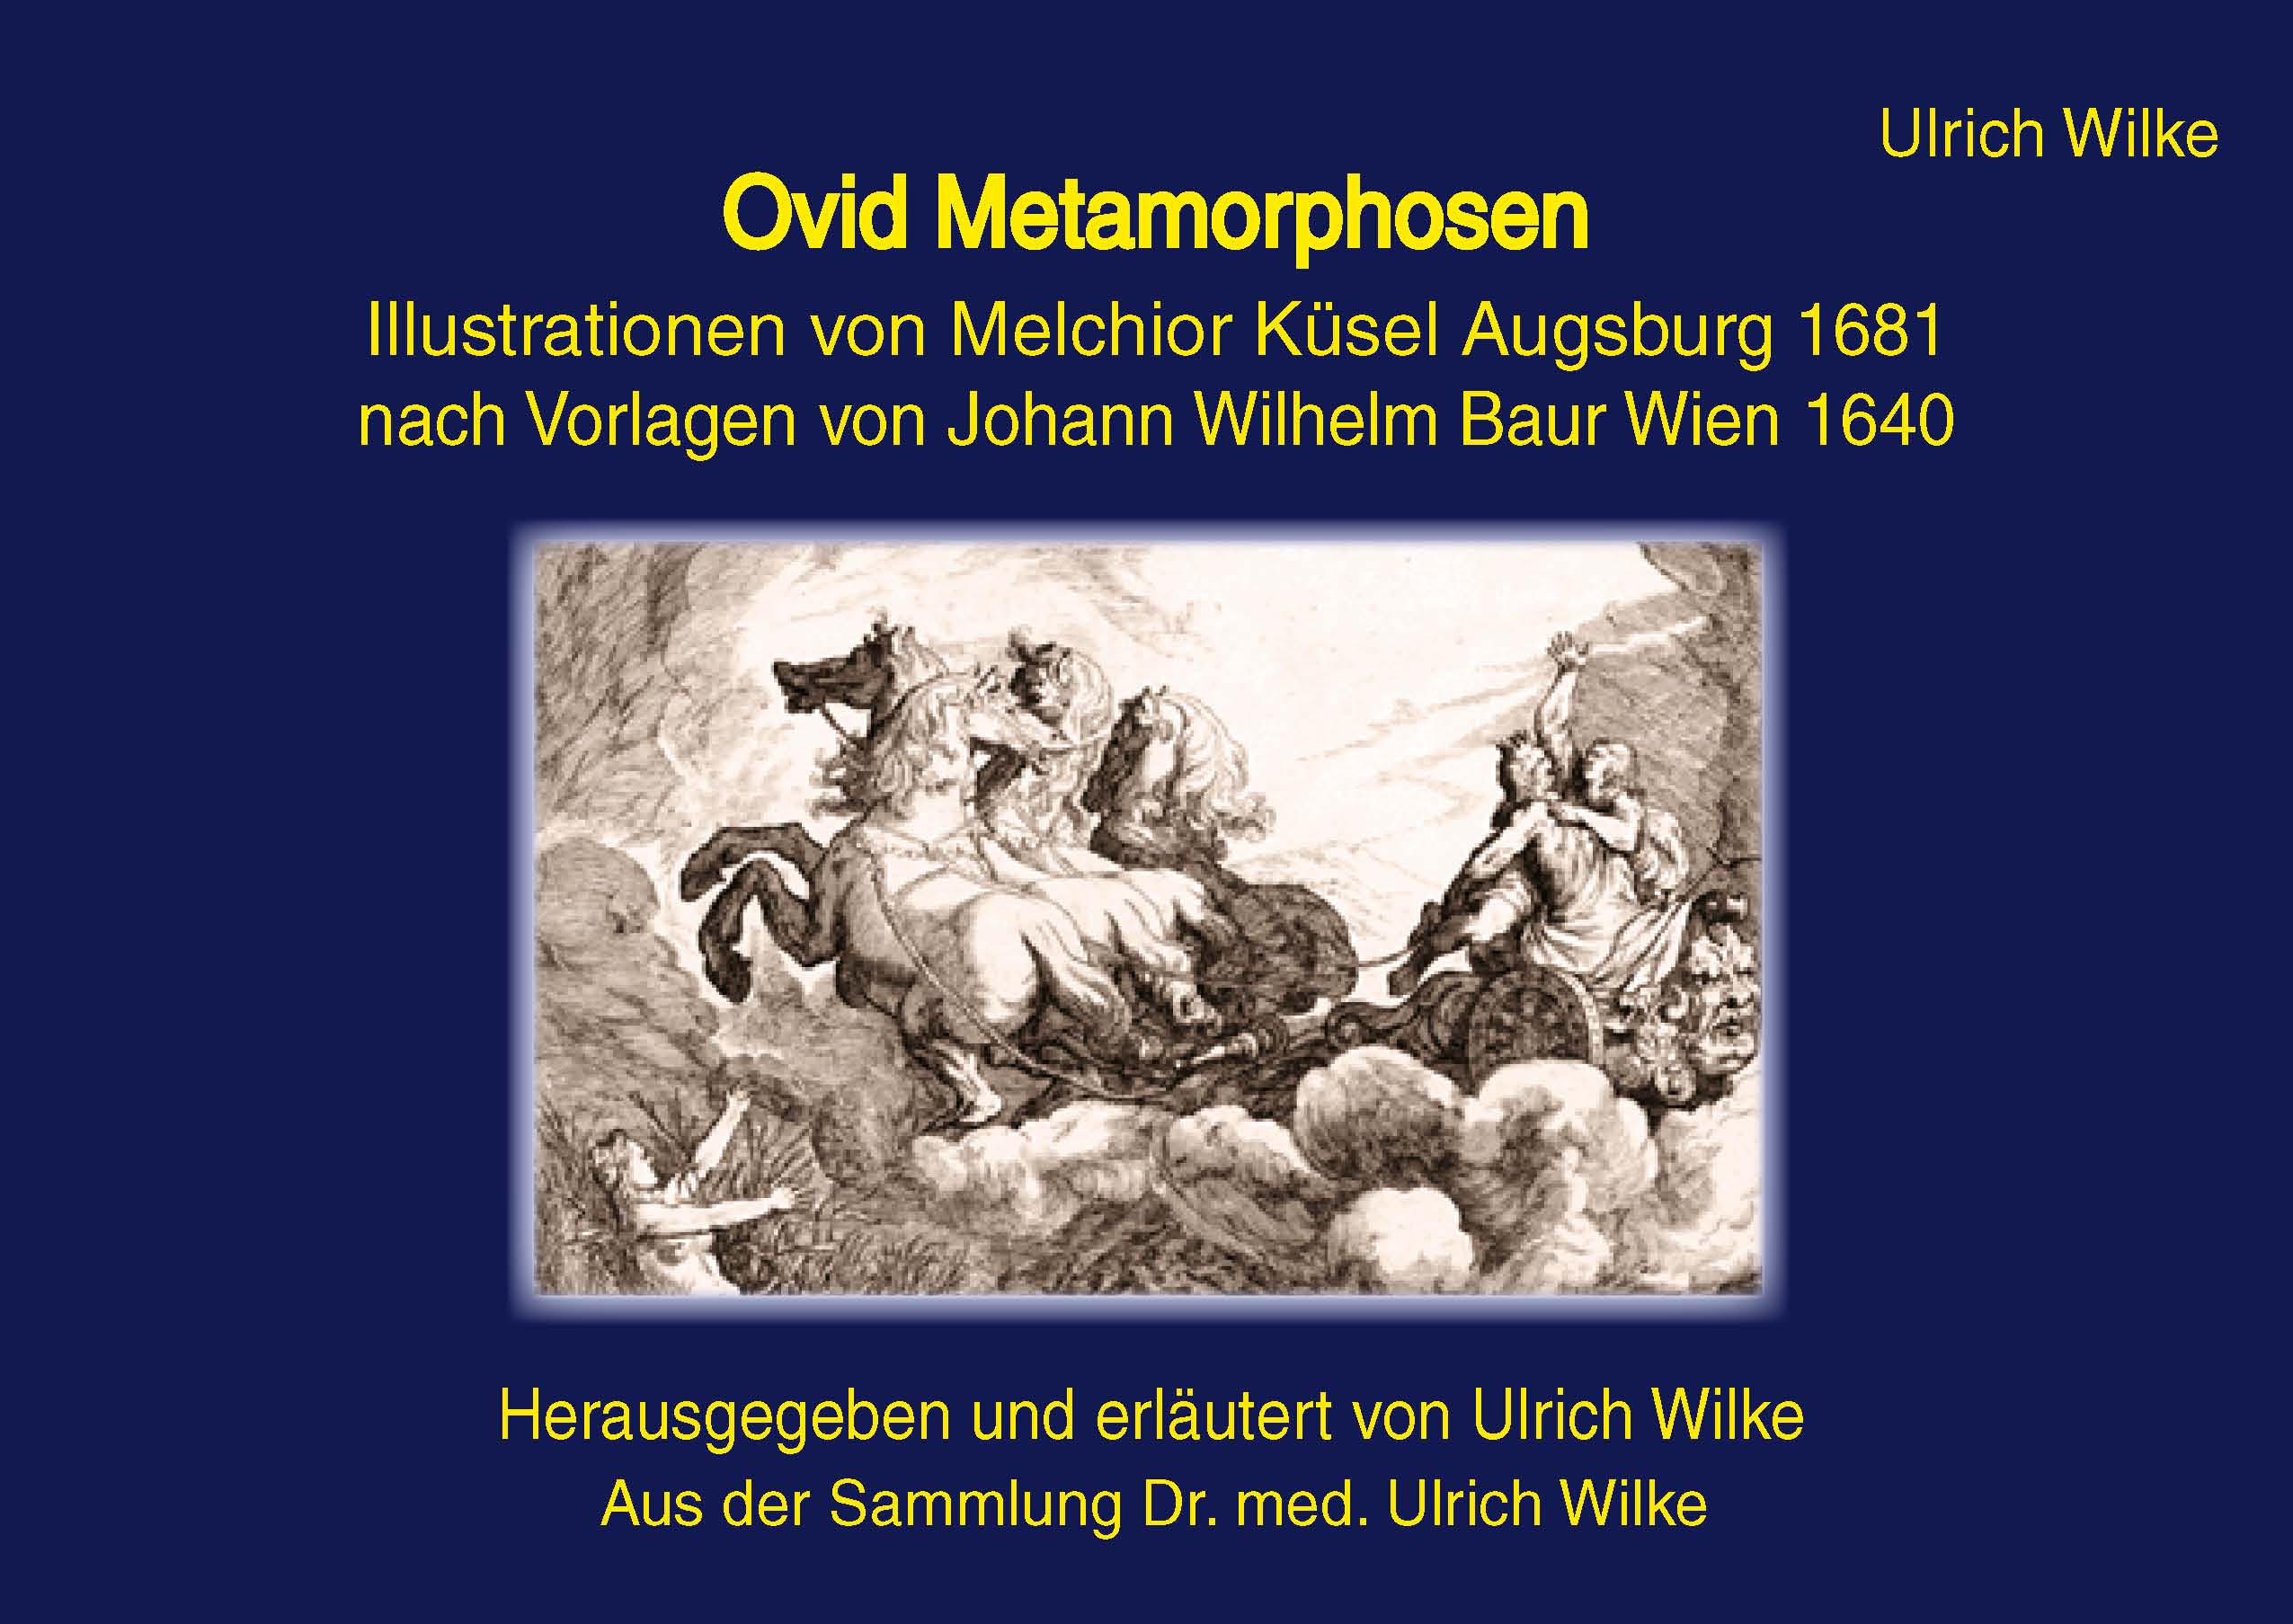 Ovid Metamorphosen<br>Illustrationen von Melchior Küsel, Augsburg 1681